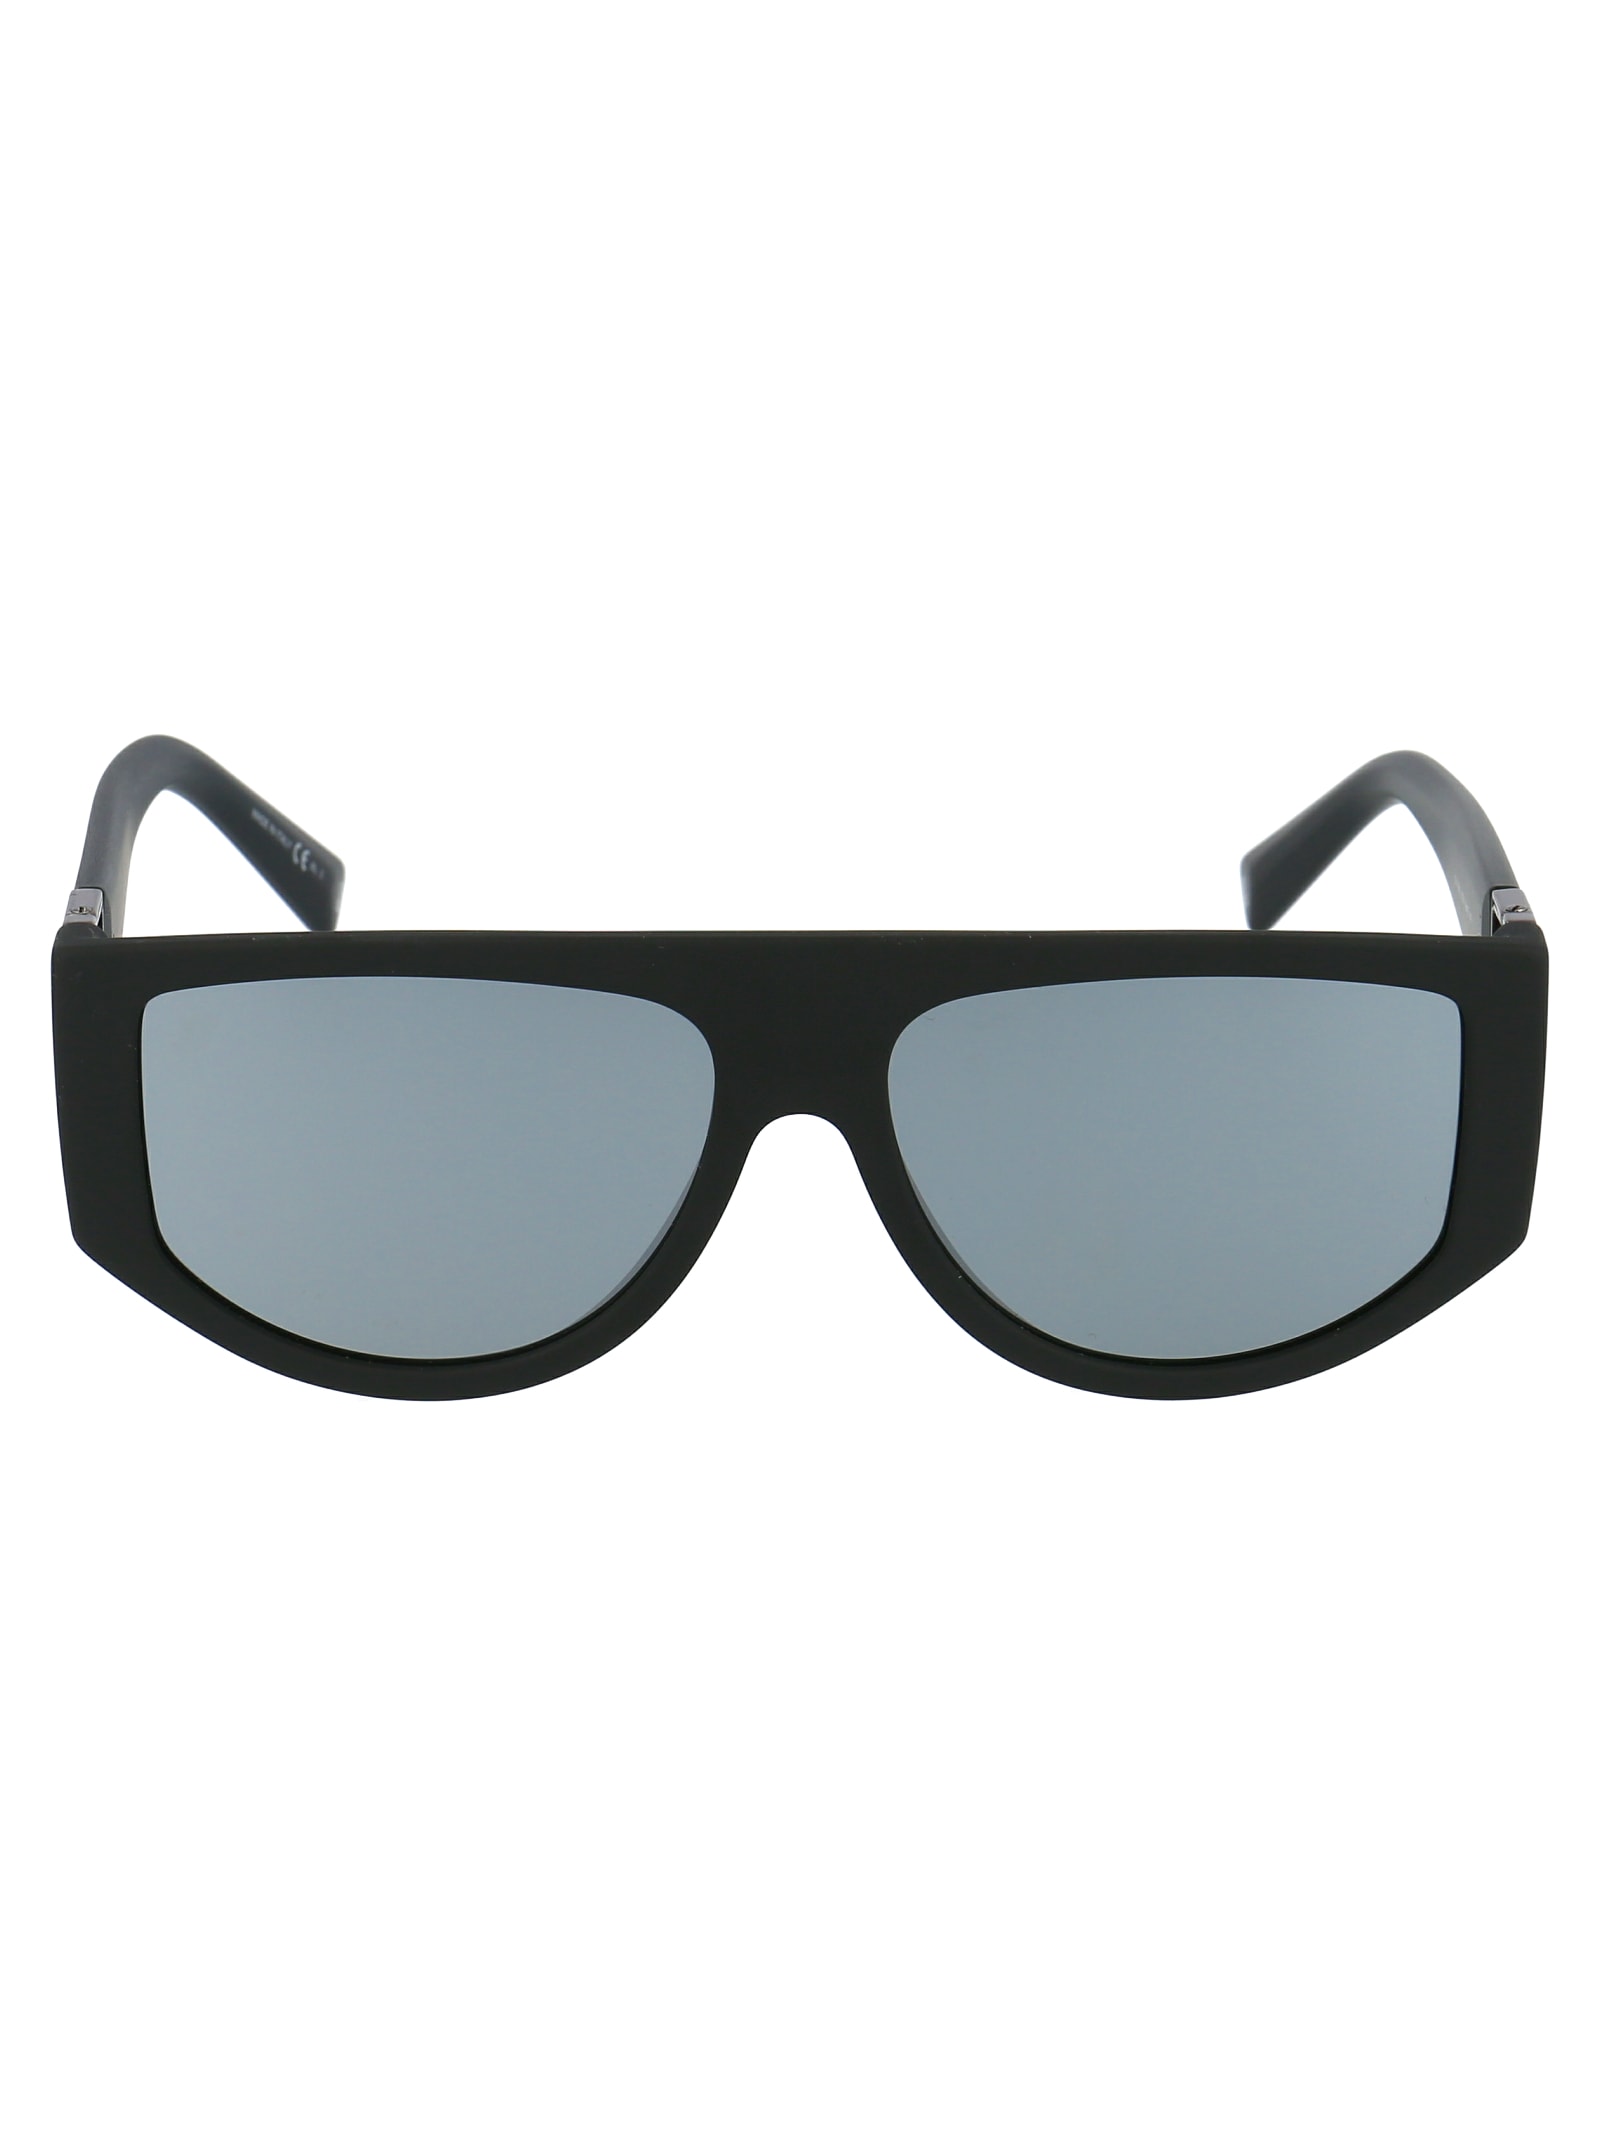 Givenchy Eyewear Gv 7156/s Sunglasses